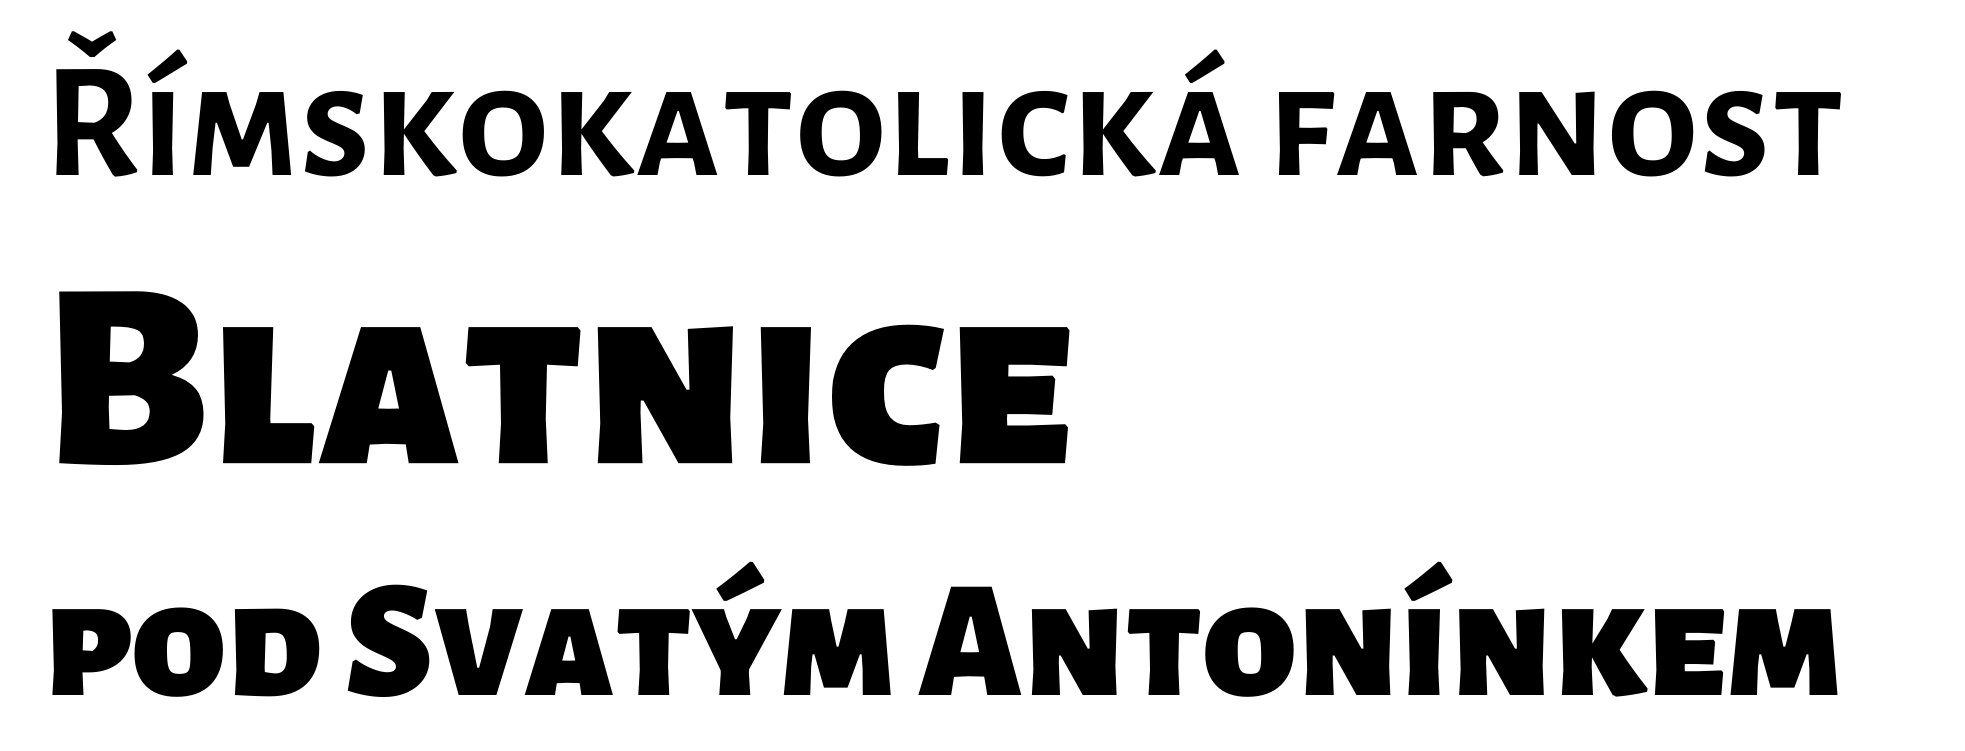 Logo Akolyté - Římskokatolická farnost Blatnice pod Svatým Antonínkem